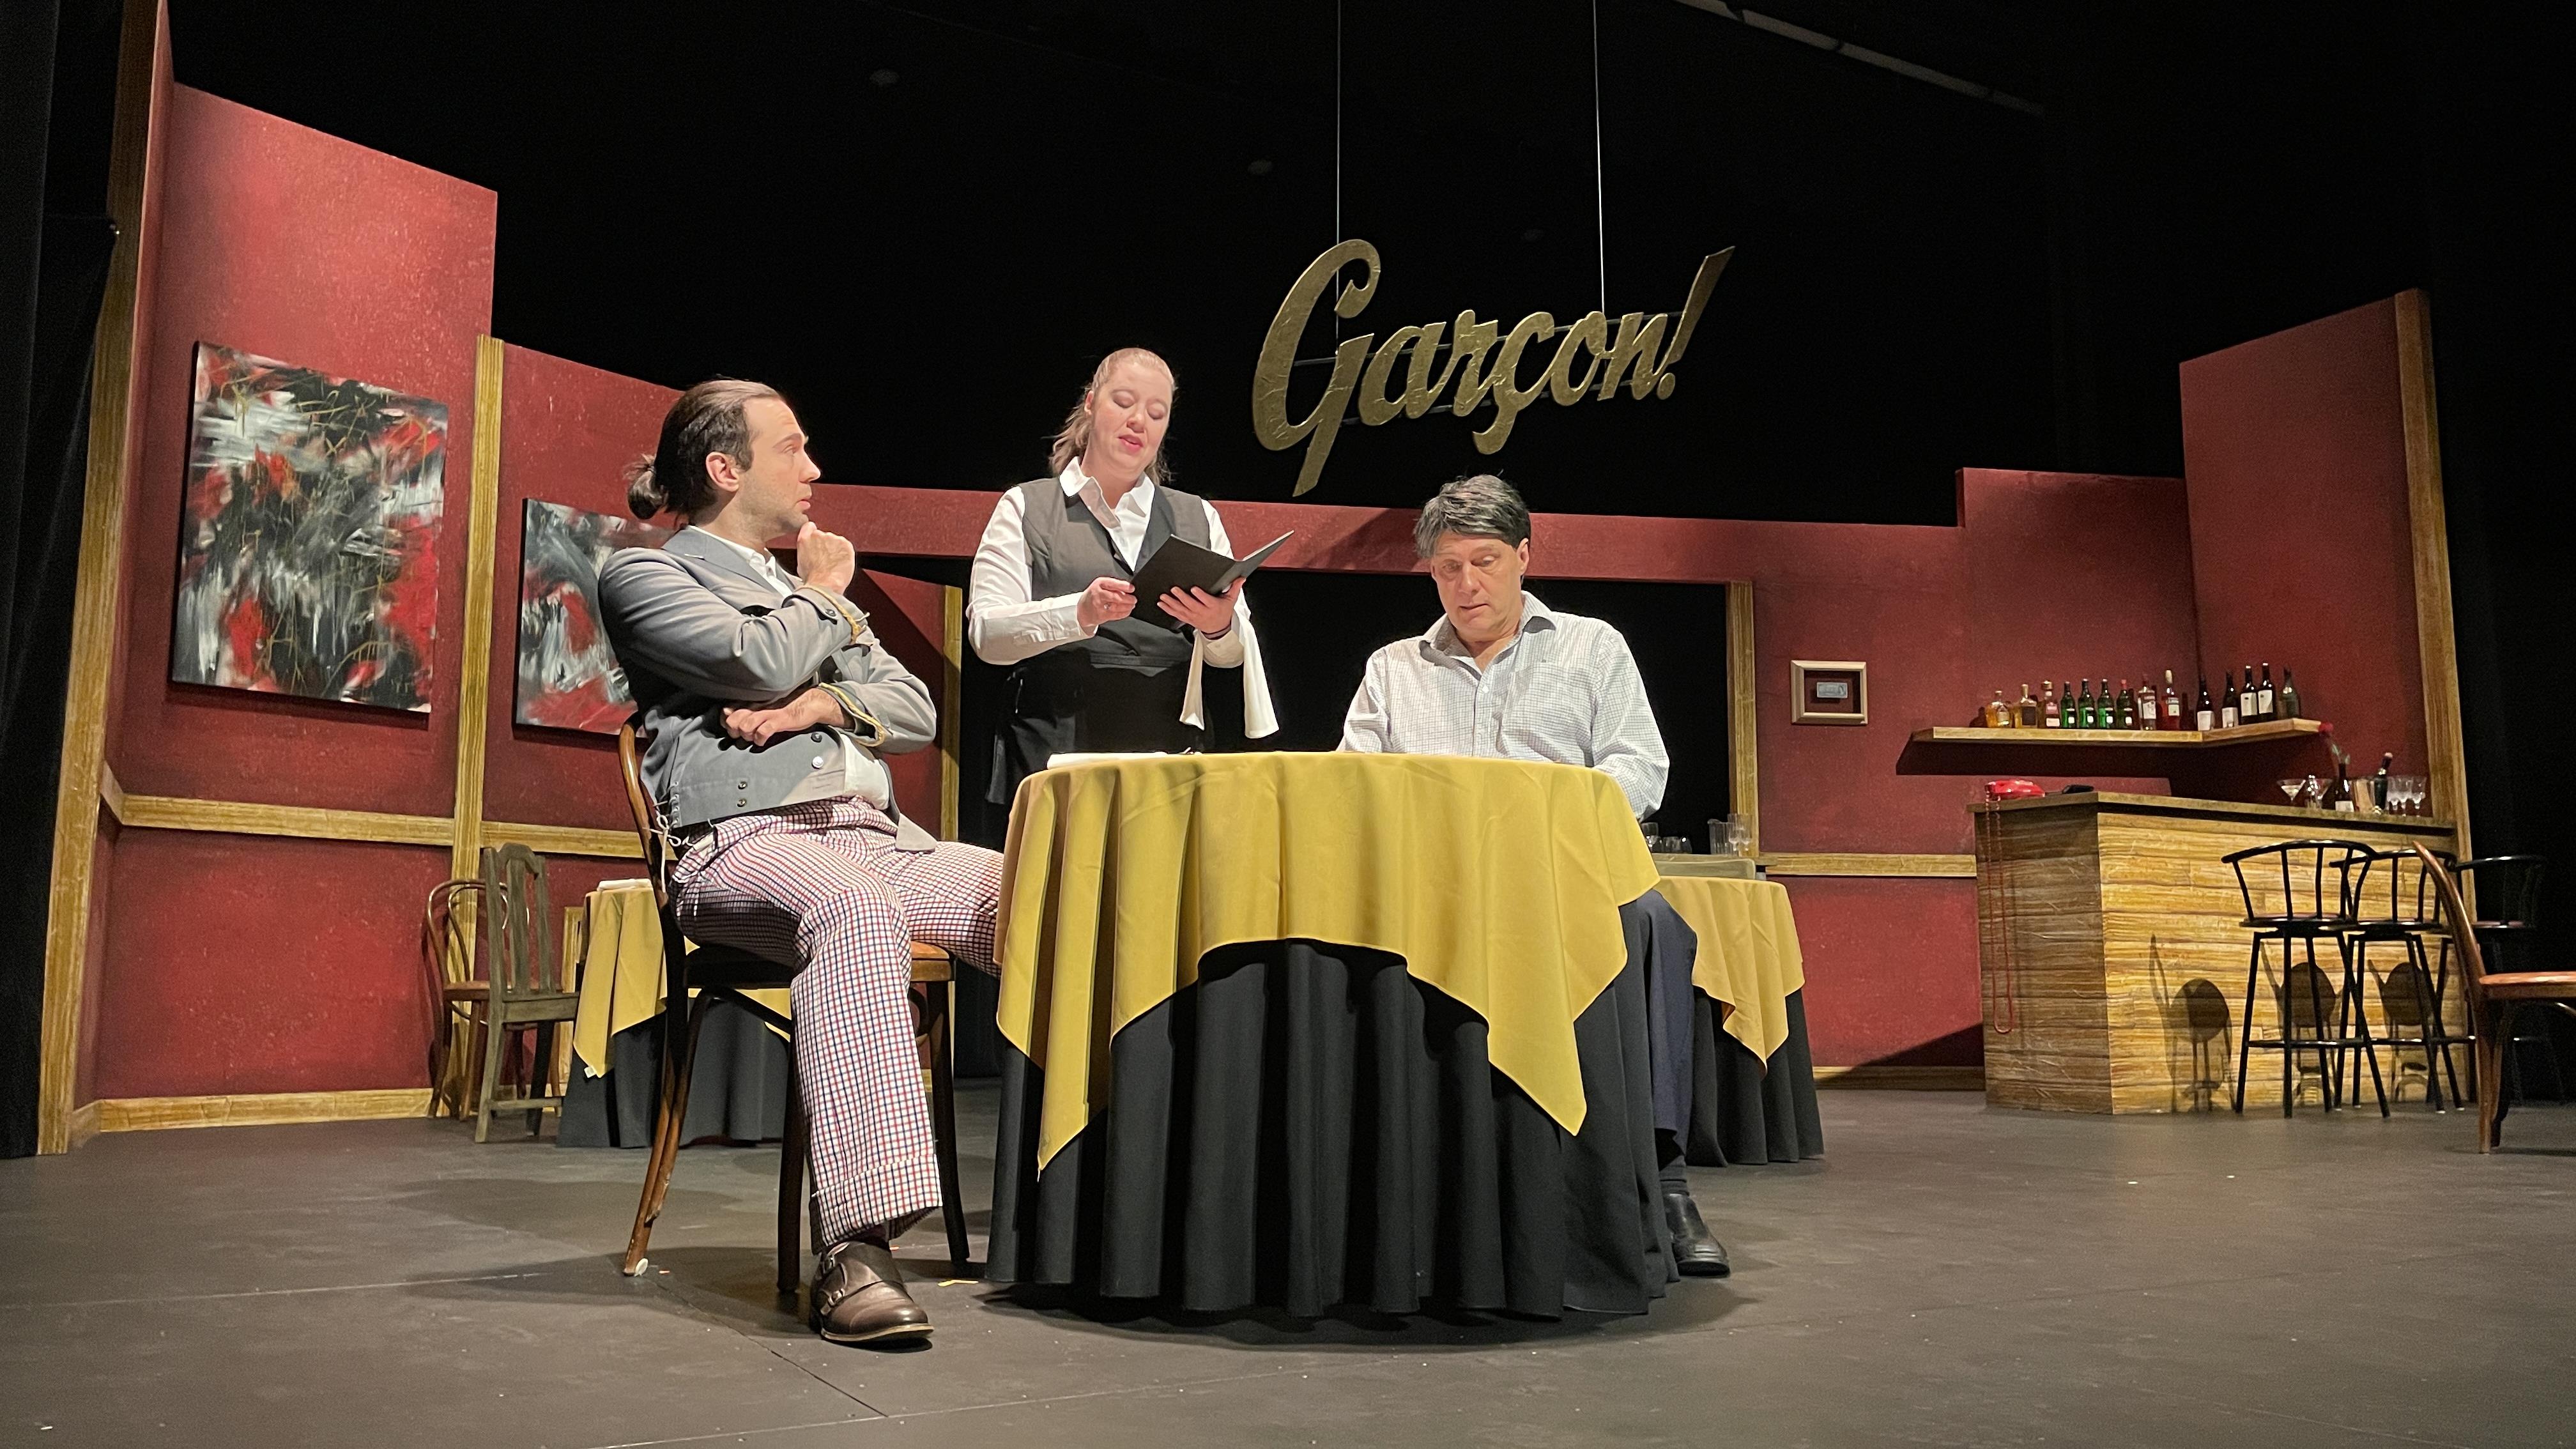 Garçon! : l'humour au menu du Théâtre du Nouvel-Ontario
Garçon! : l'humour au menu du Théâtre du Nouvel-Ontario